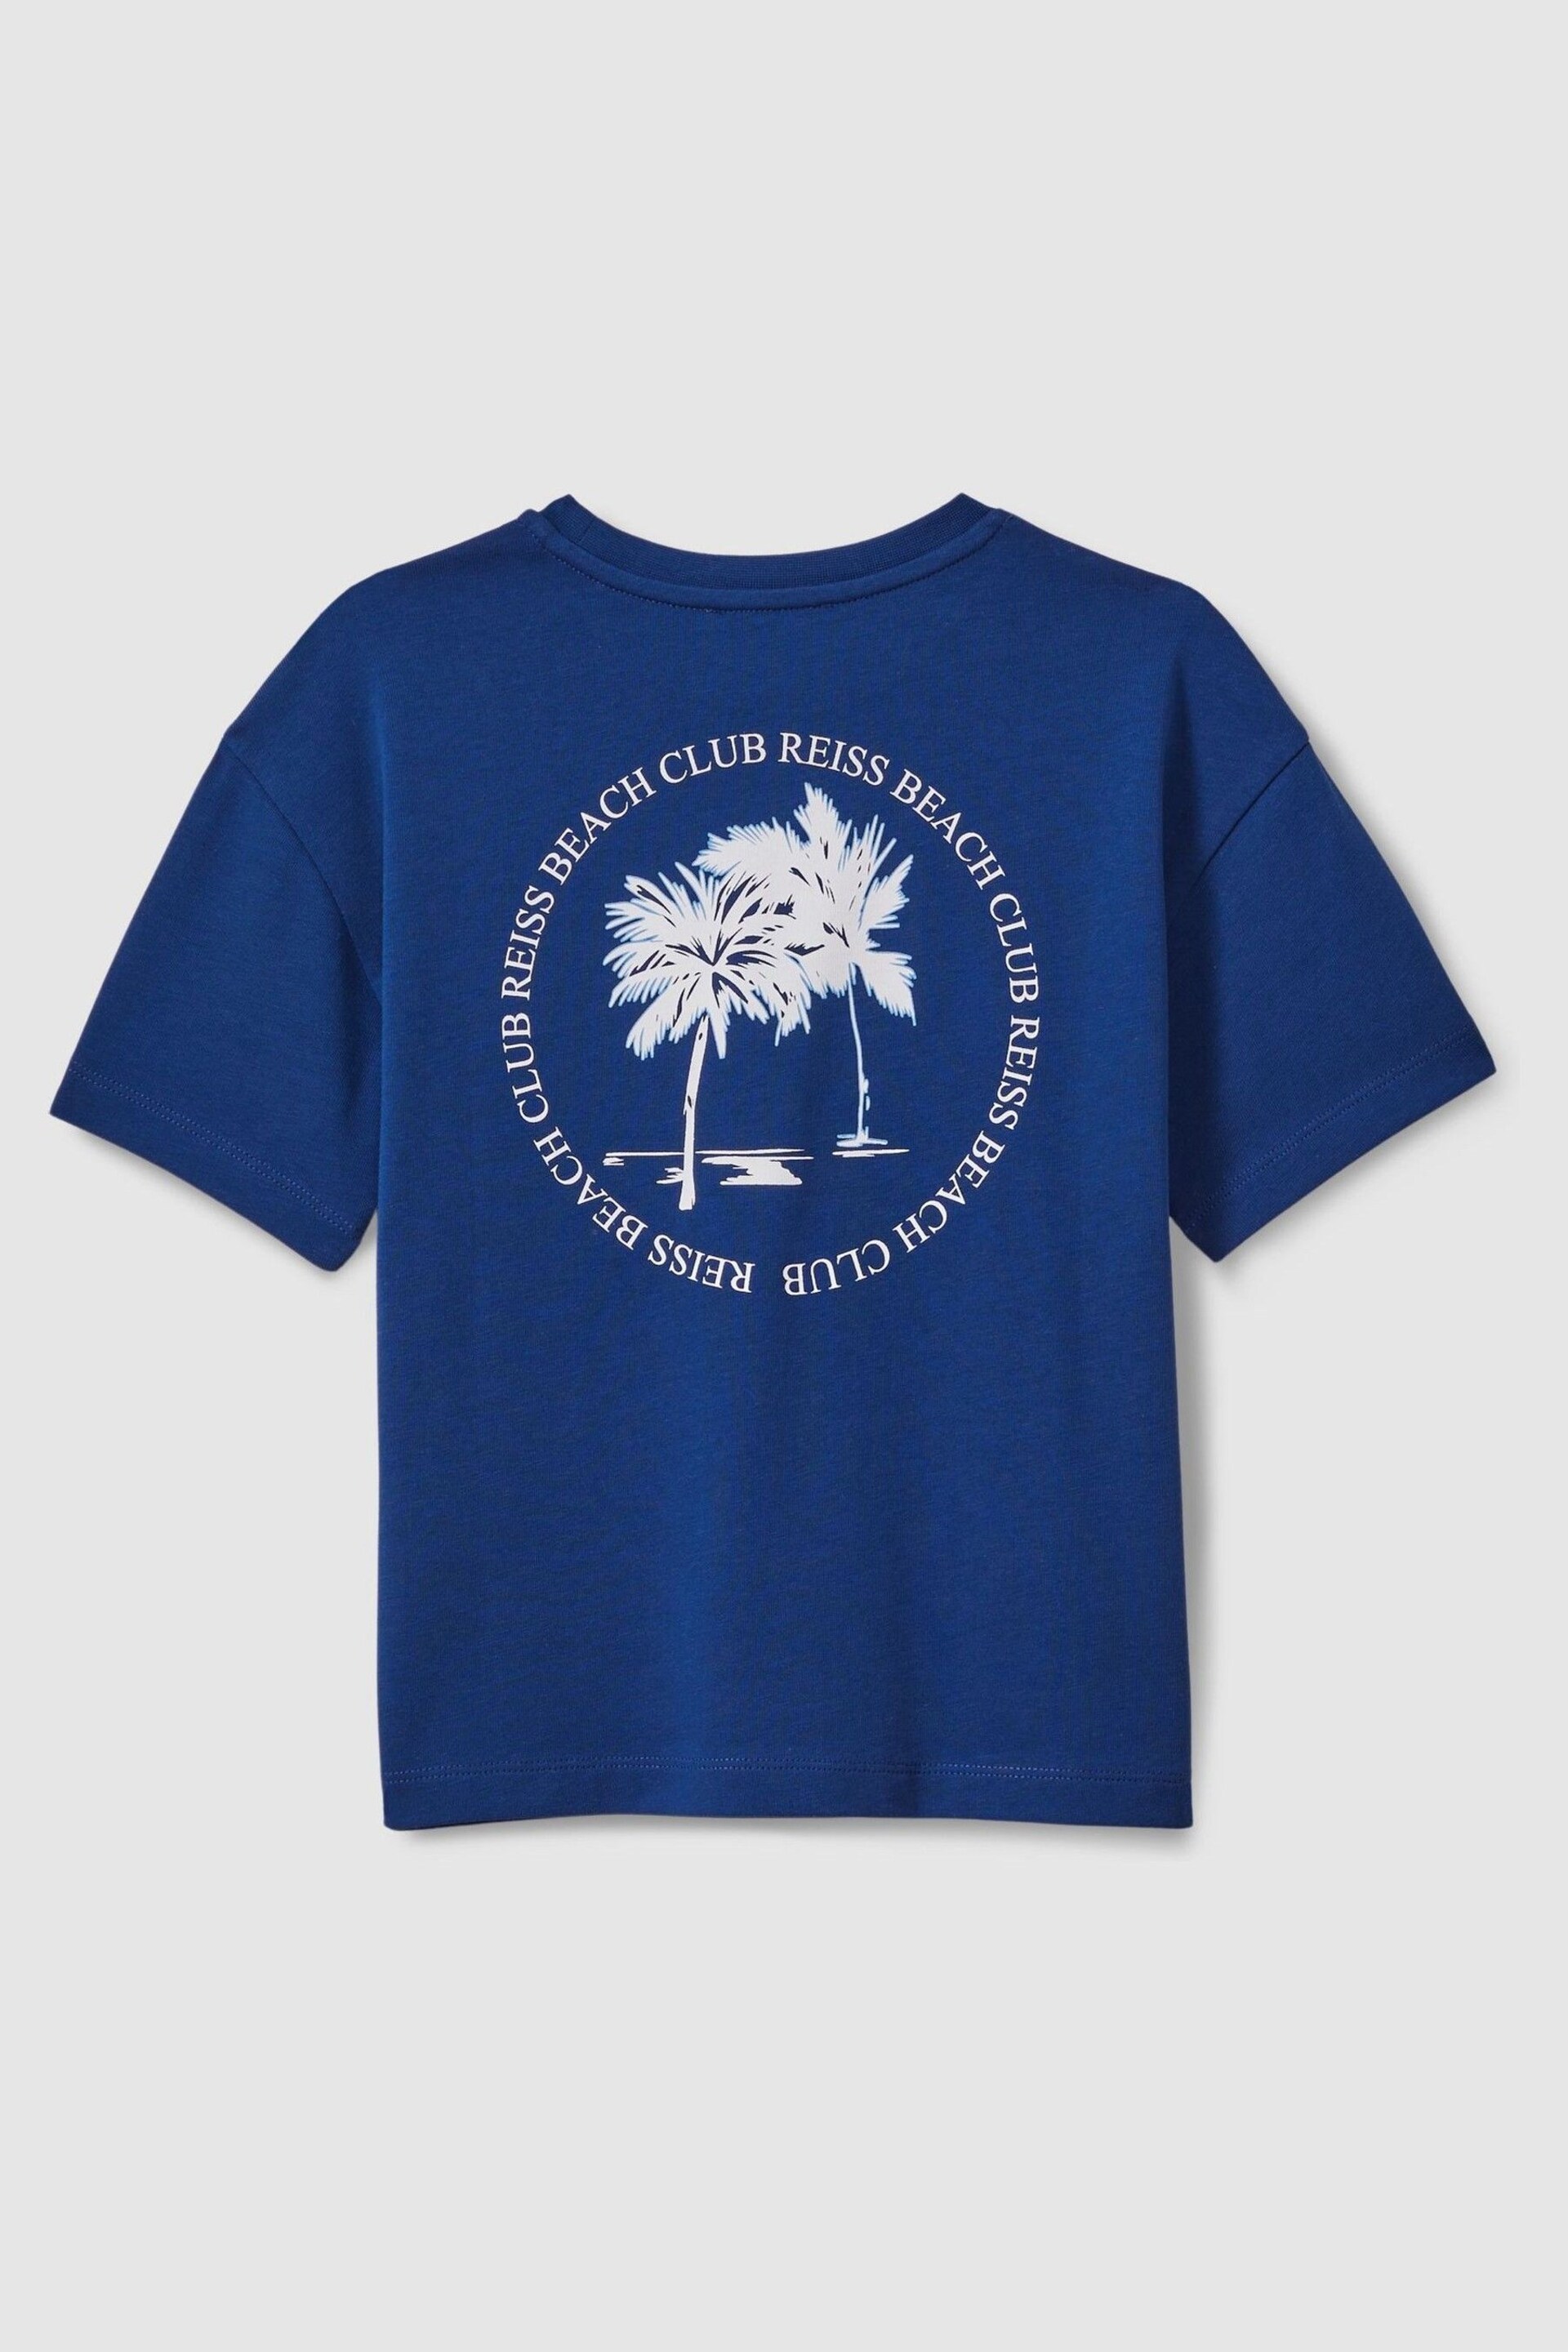 Reiss Lapis Blue Palm Cotton Crew Neck Motif T-Shirt - Image 2 of 3